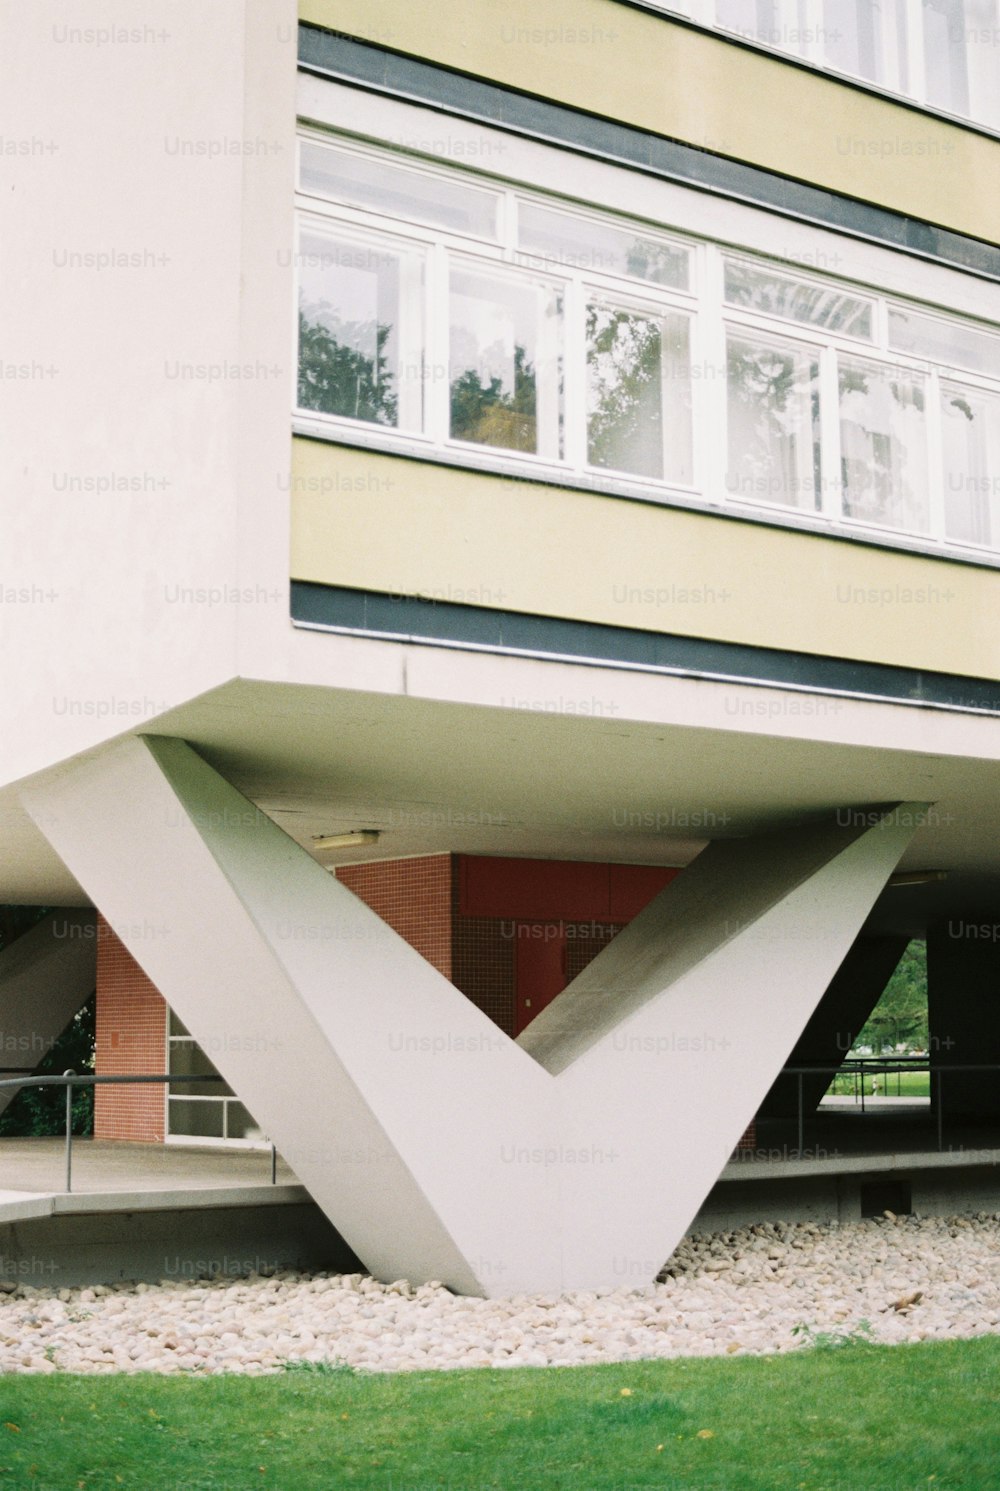 Un edificio con un gran diseño triangular frente a él